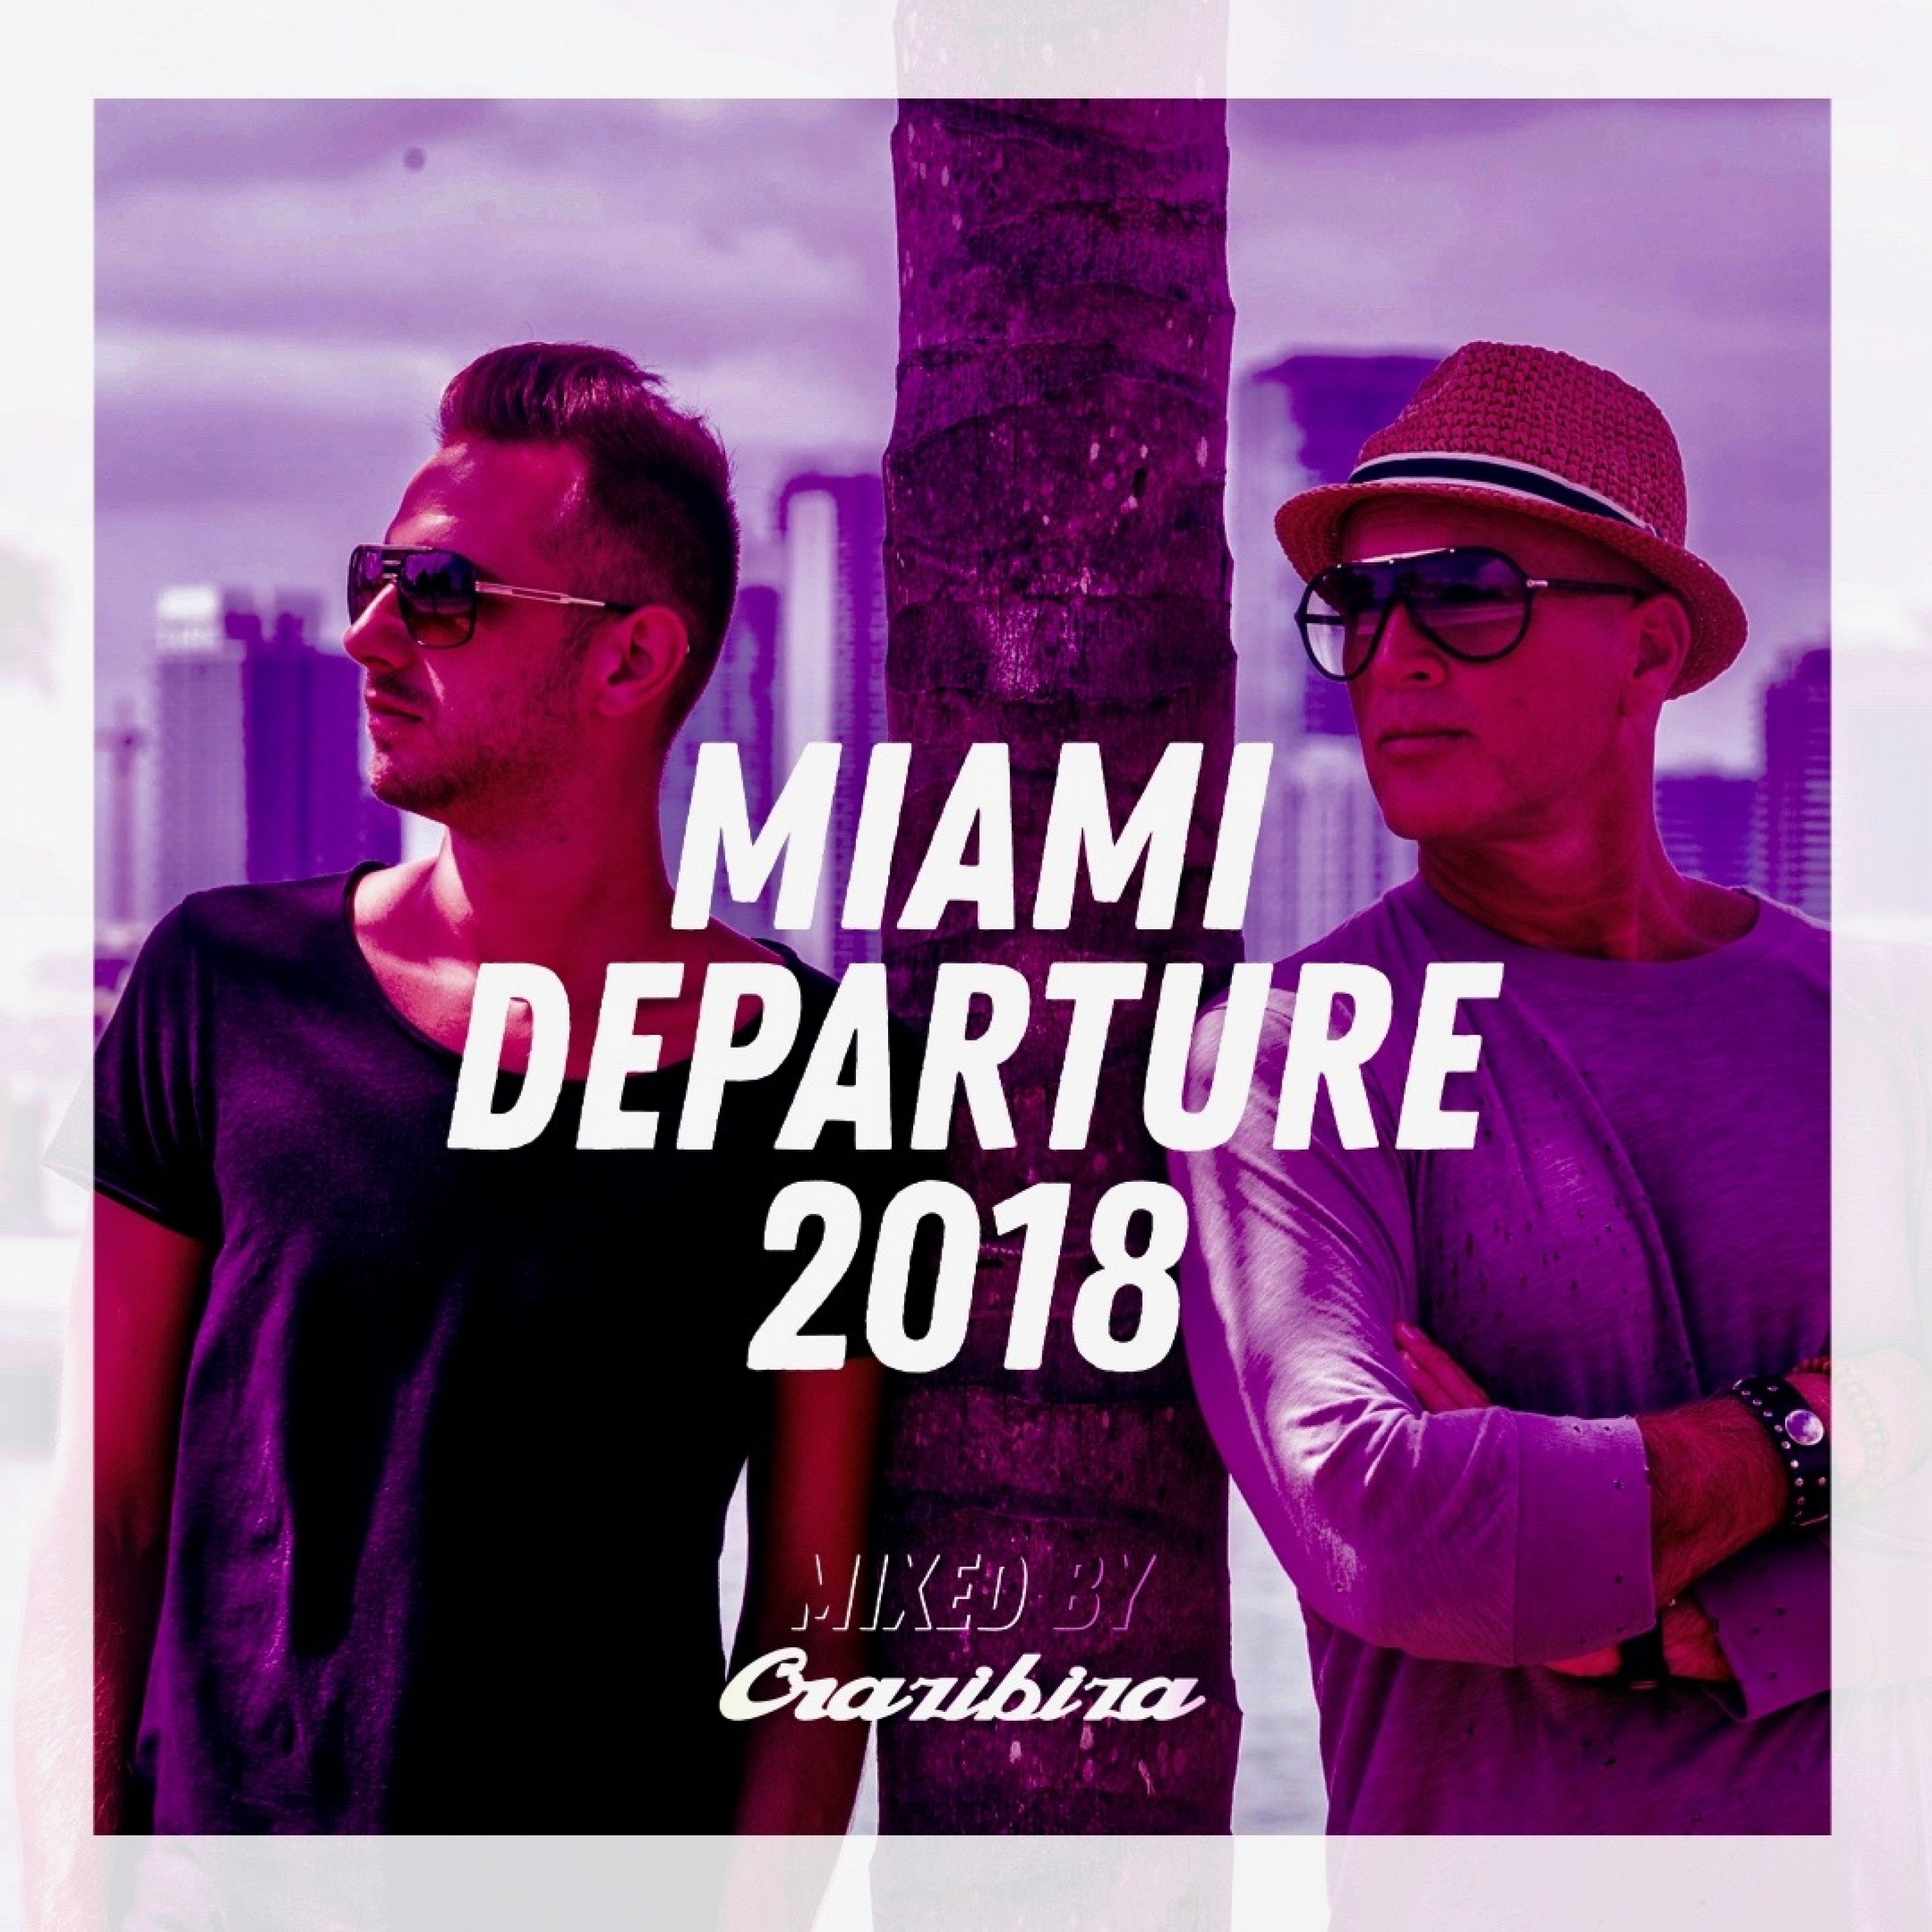 Miami Departure 2018 - Crazibiza